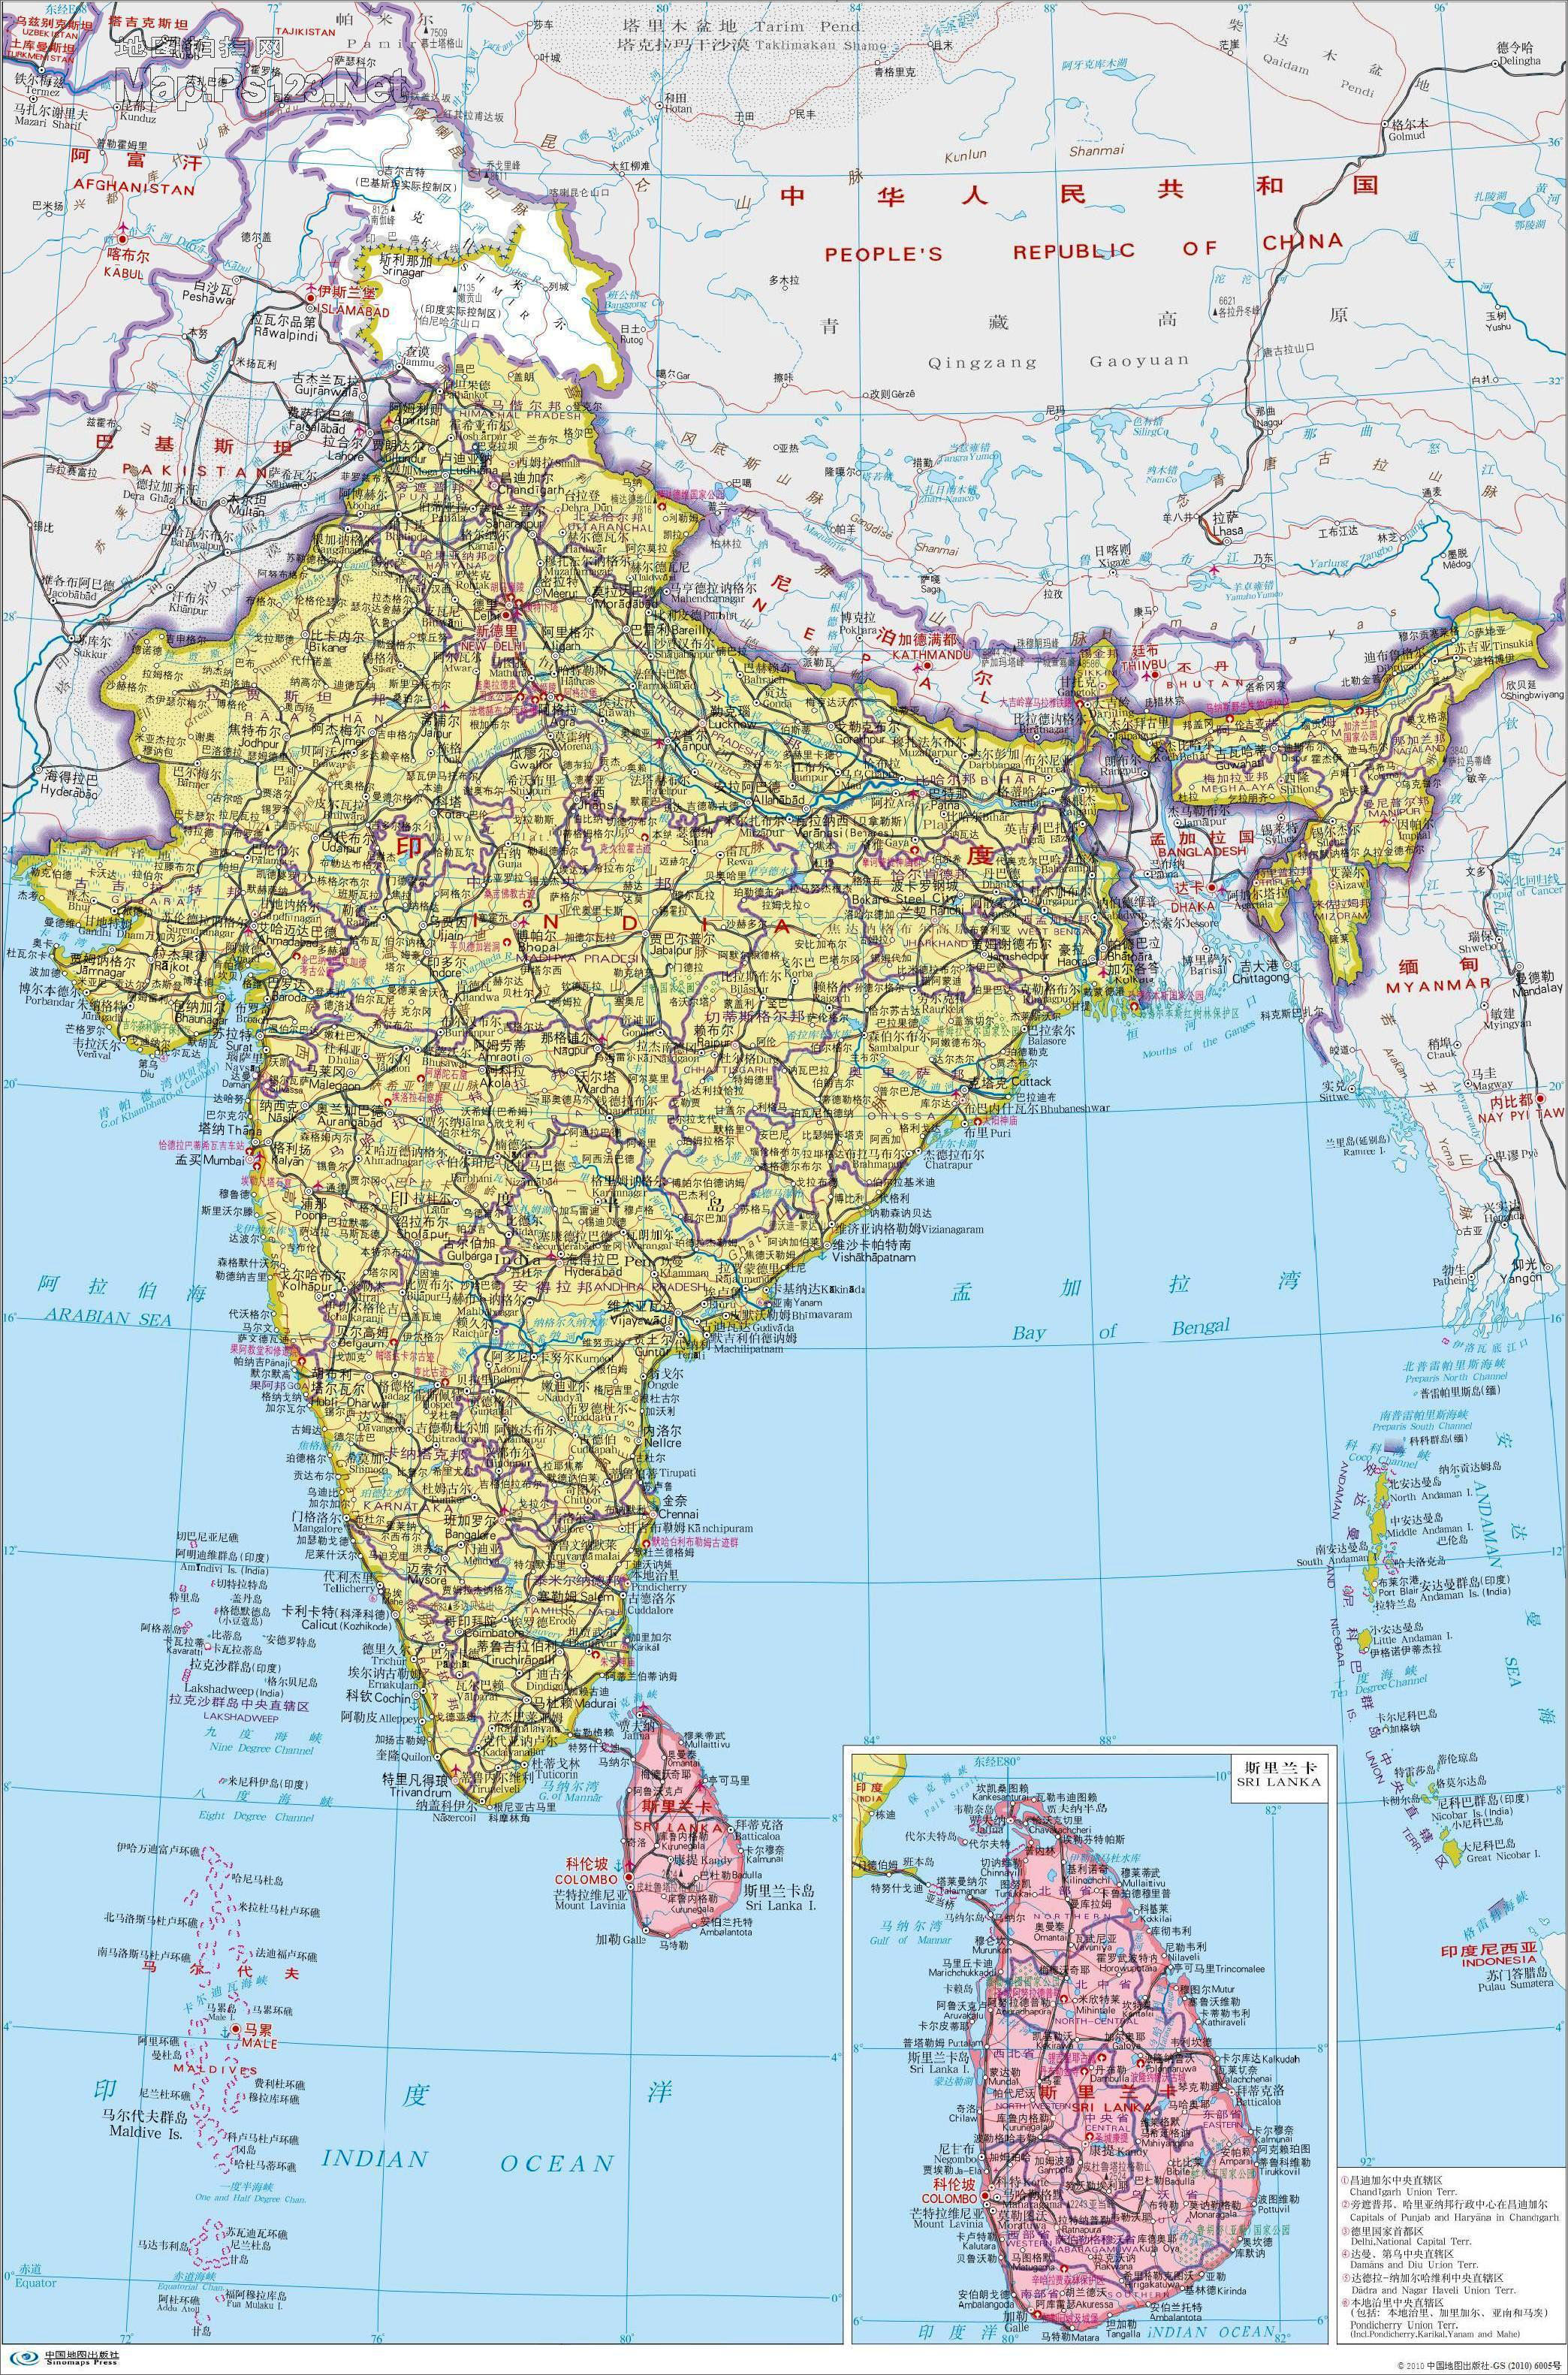 印度地区划分图片